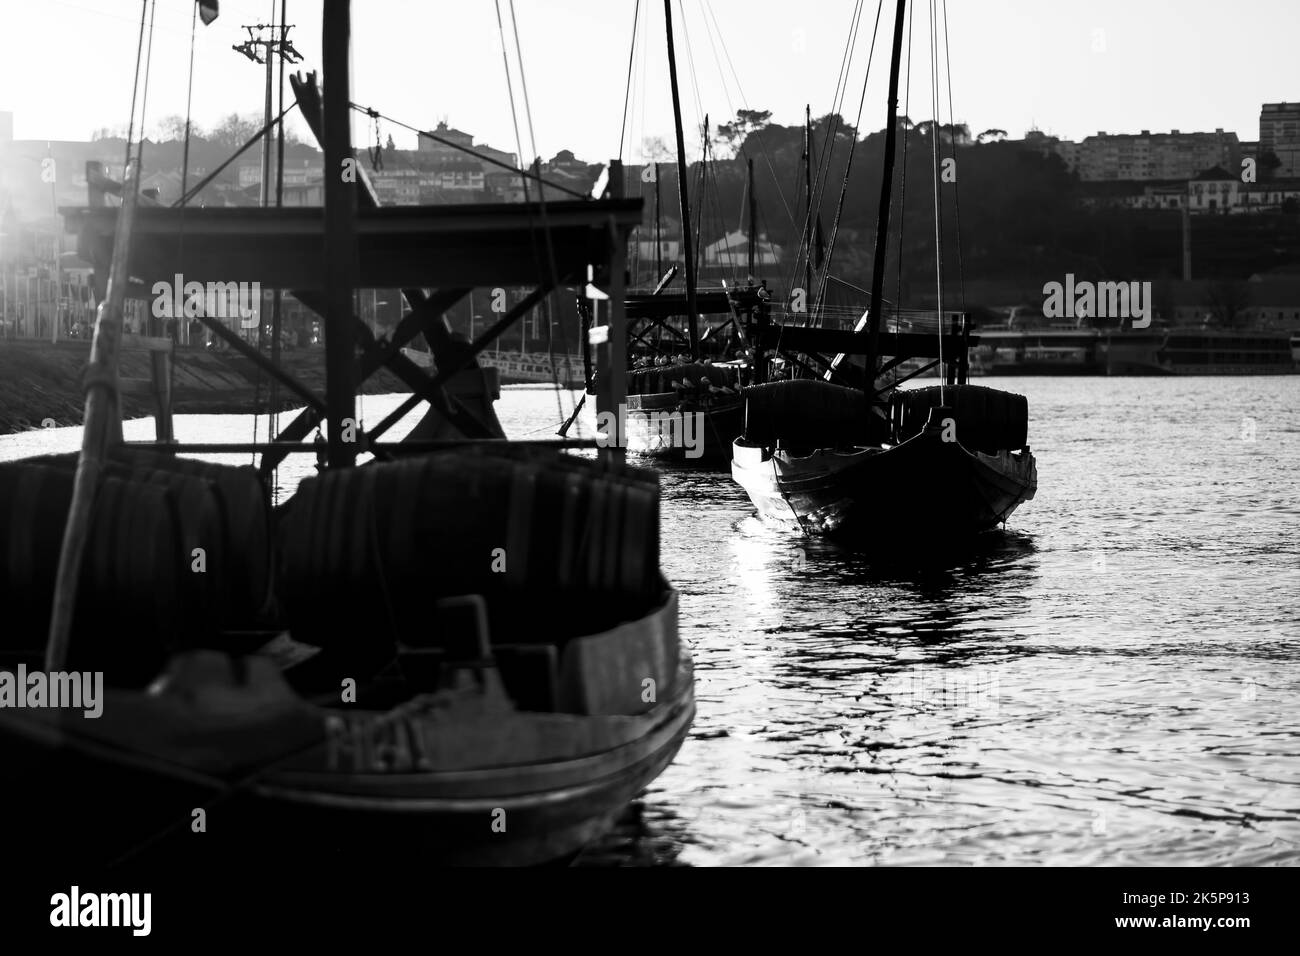 Vintage Traditional Boats in Vila Nova de Gaia, Porto, Portugal. Black and white photo. Stock Photo